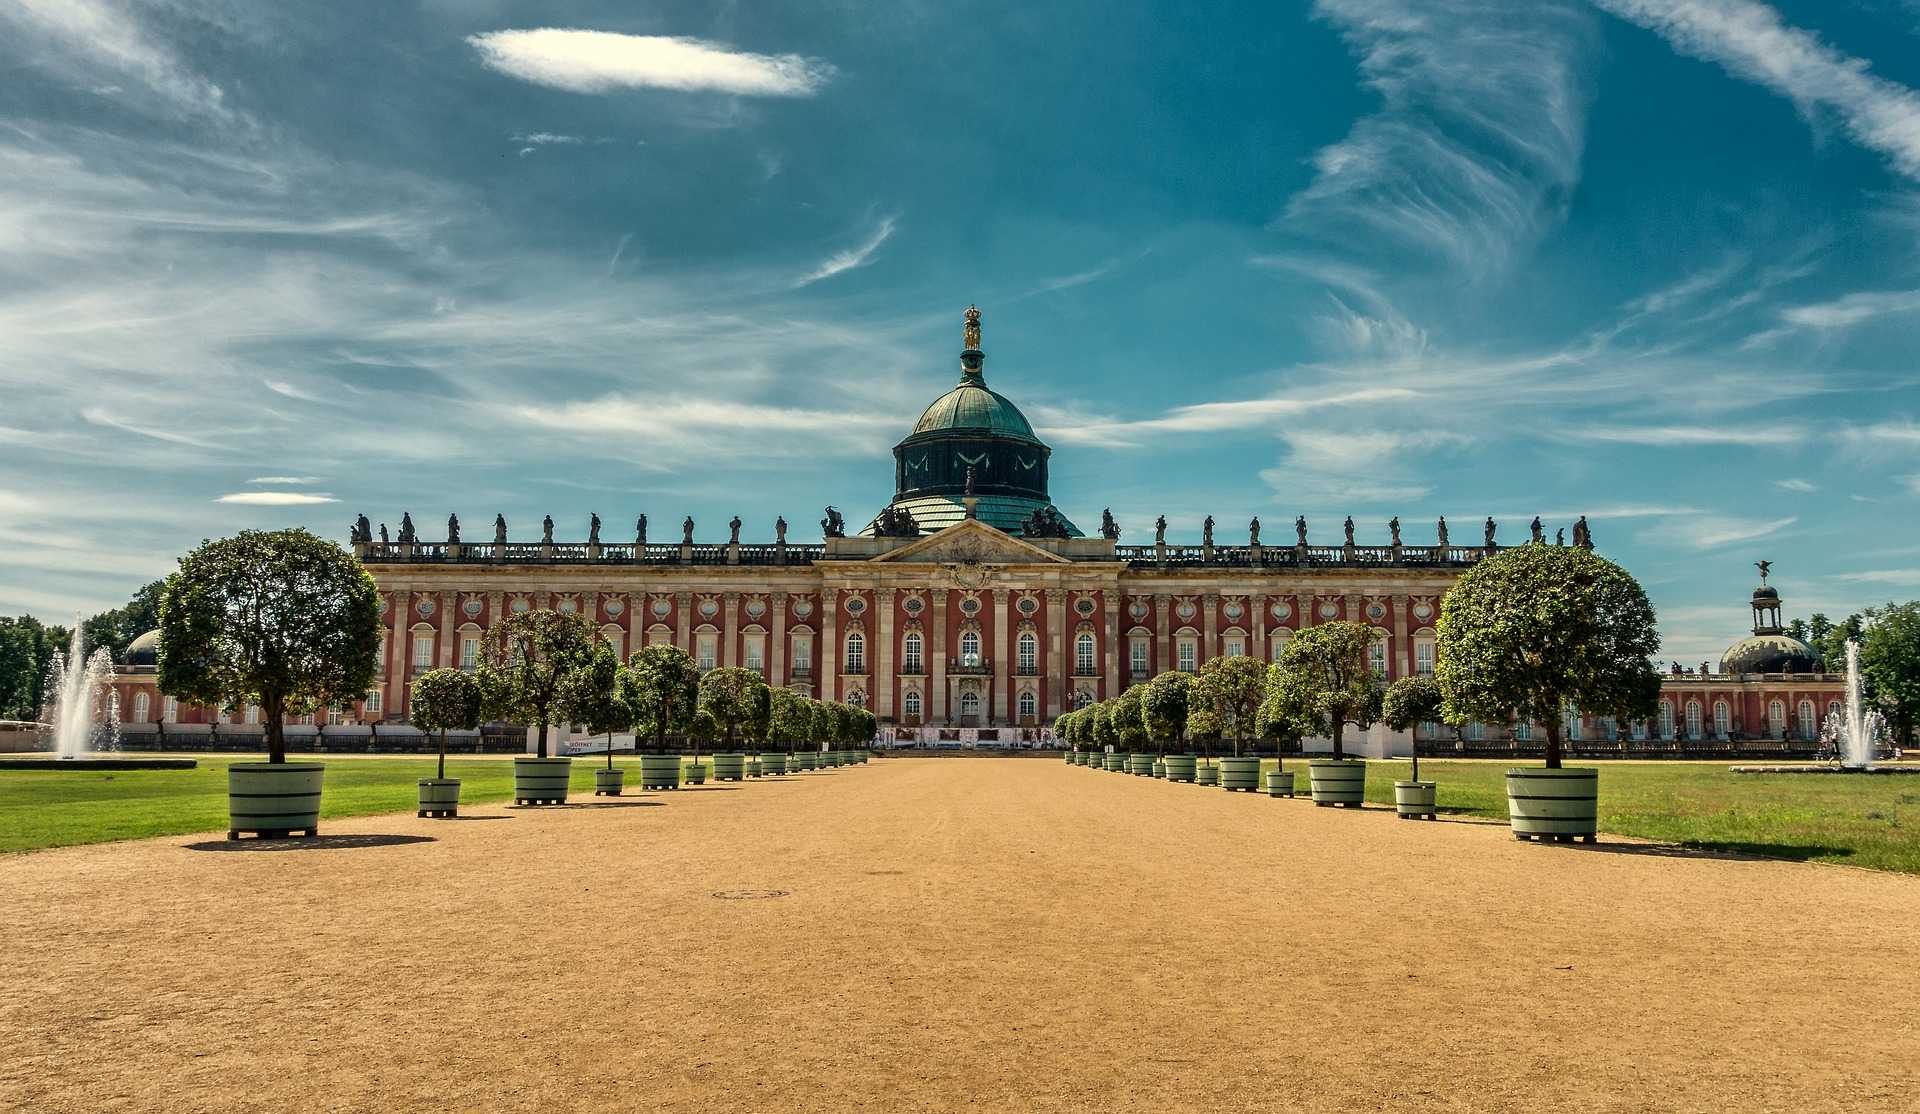 ארמון סנסוסי ברלין 2023 - כרטיסים, מחירים וכל הפרטים!